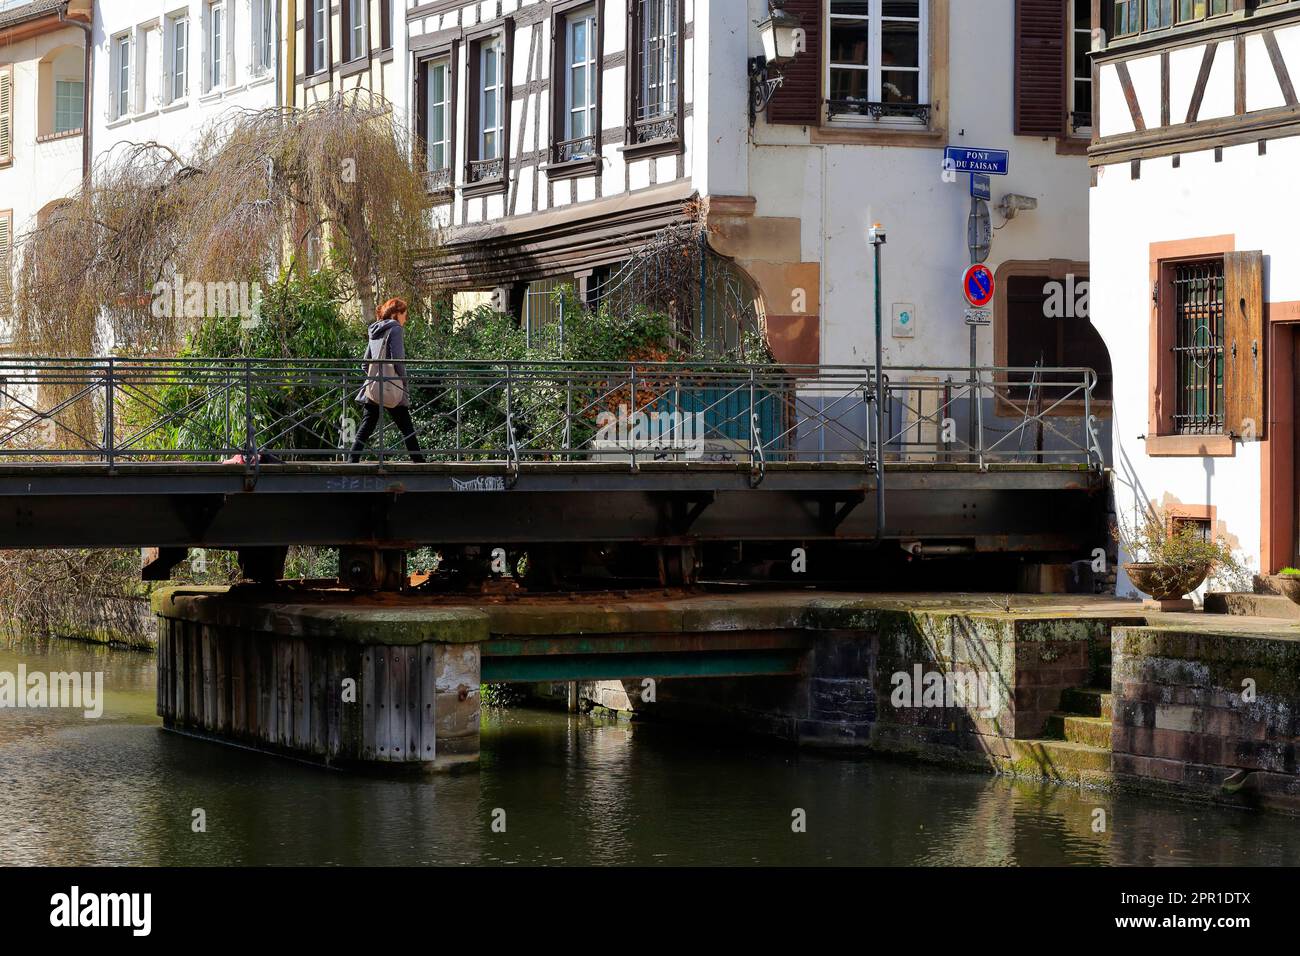 Une personne se promène au-dessus du Pont du Faisan, un pont hydraulique ou un pont tournant au-dessus de la rivière Ill à Grande-Île de Strasbourg, France. Banque D'Images